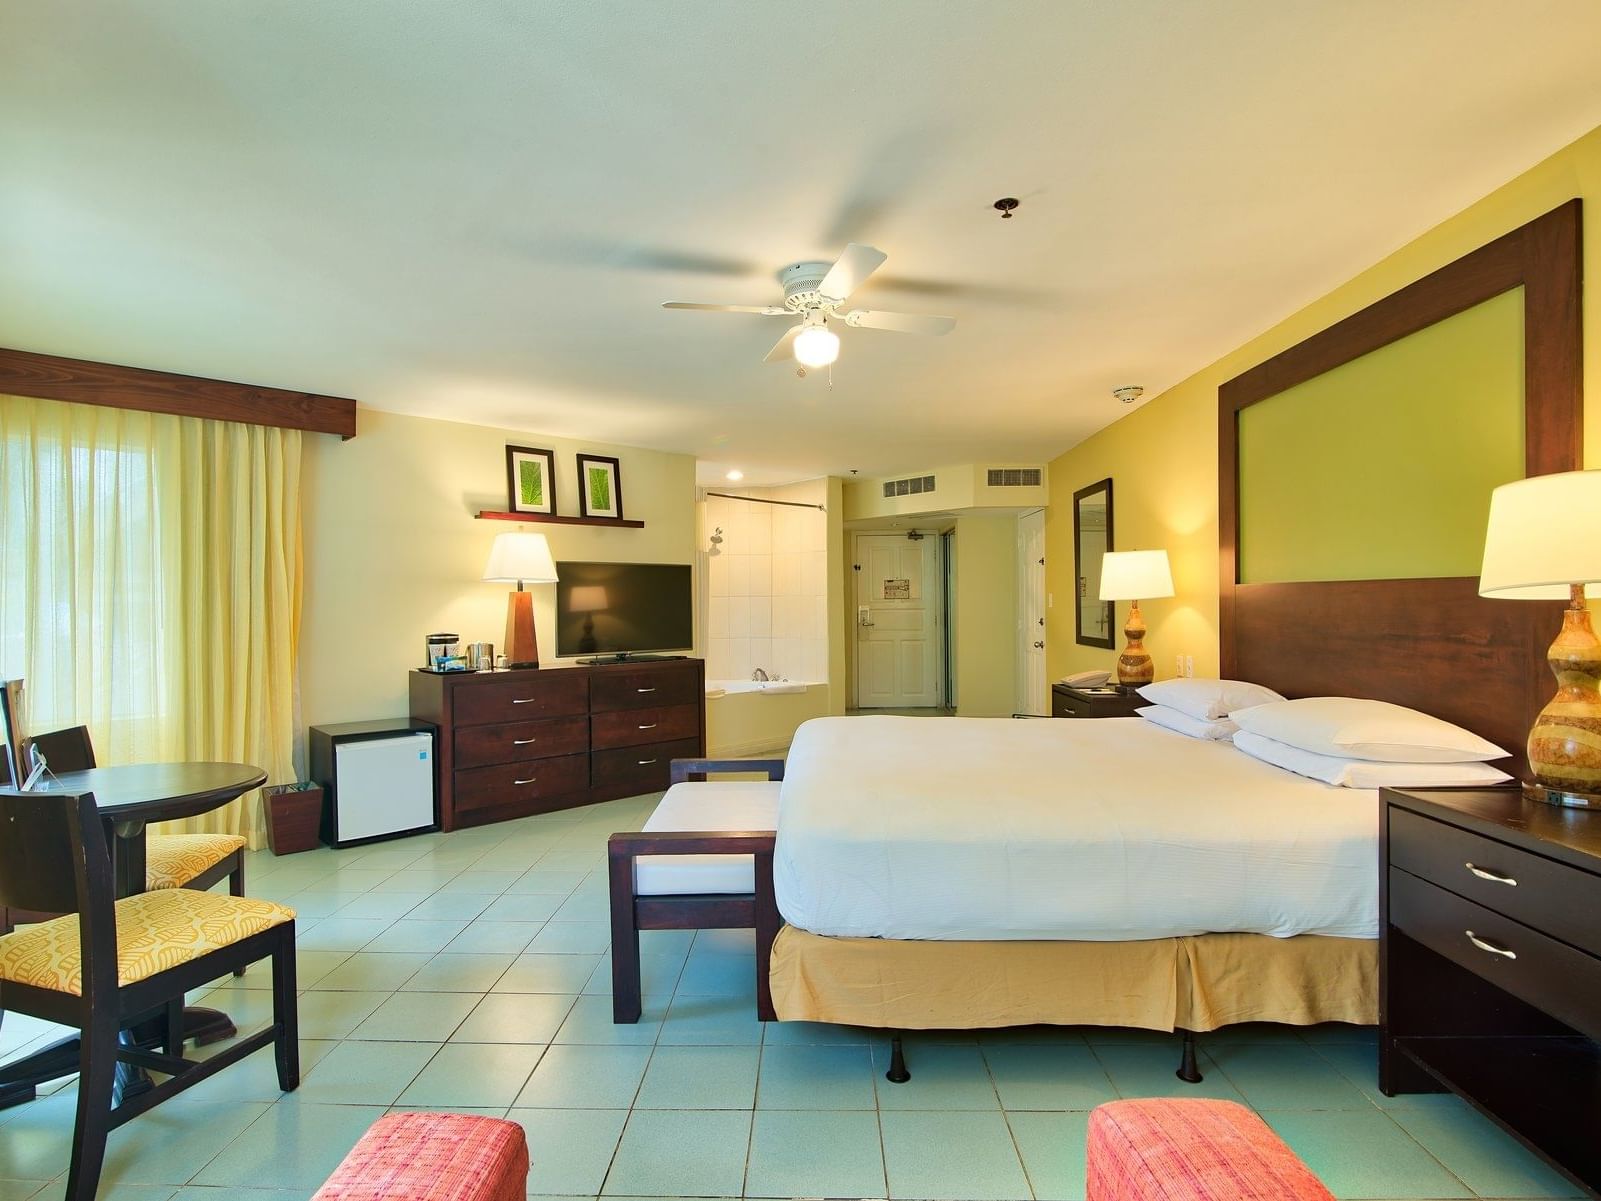 Luxury Jr honeymoon suite rooms at Fiesta Resort 